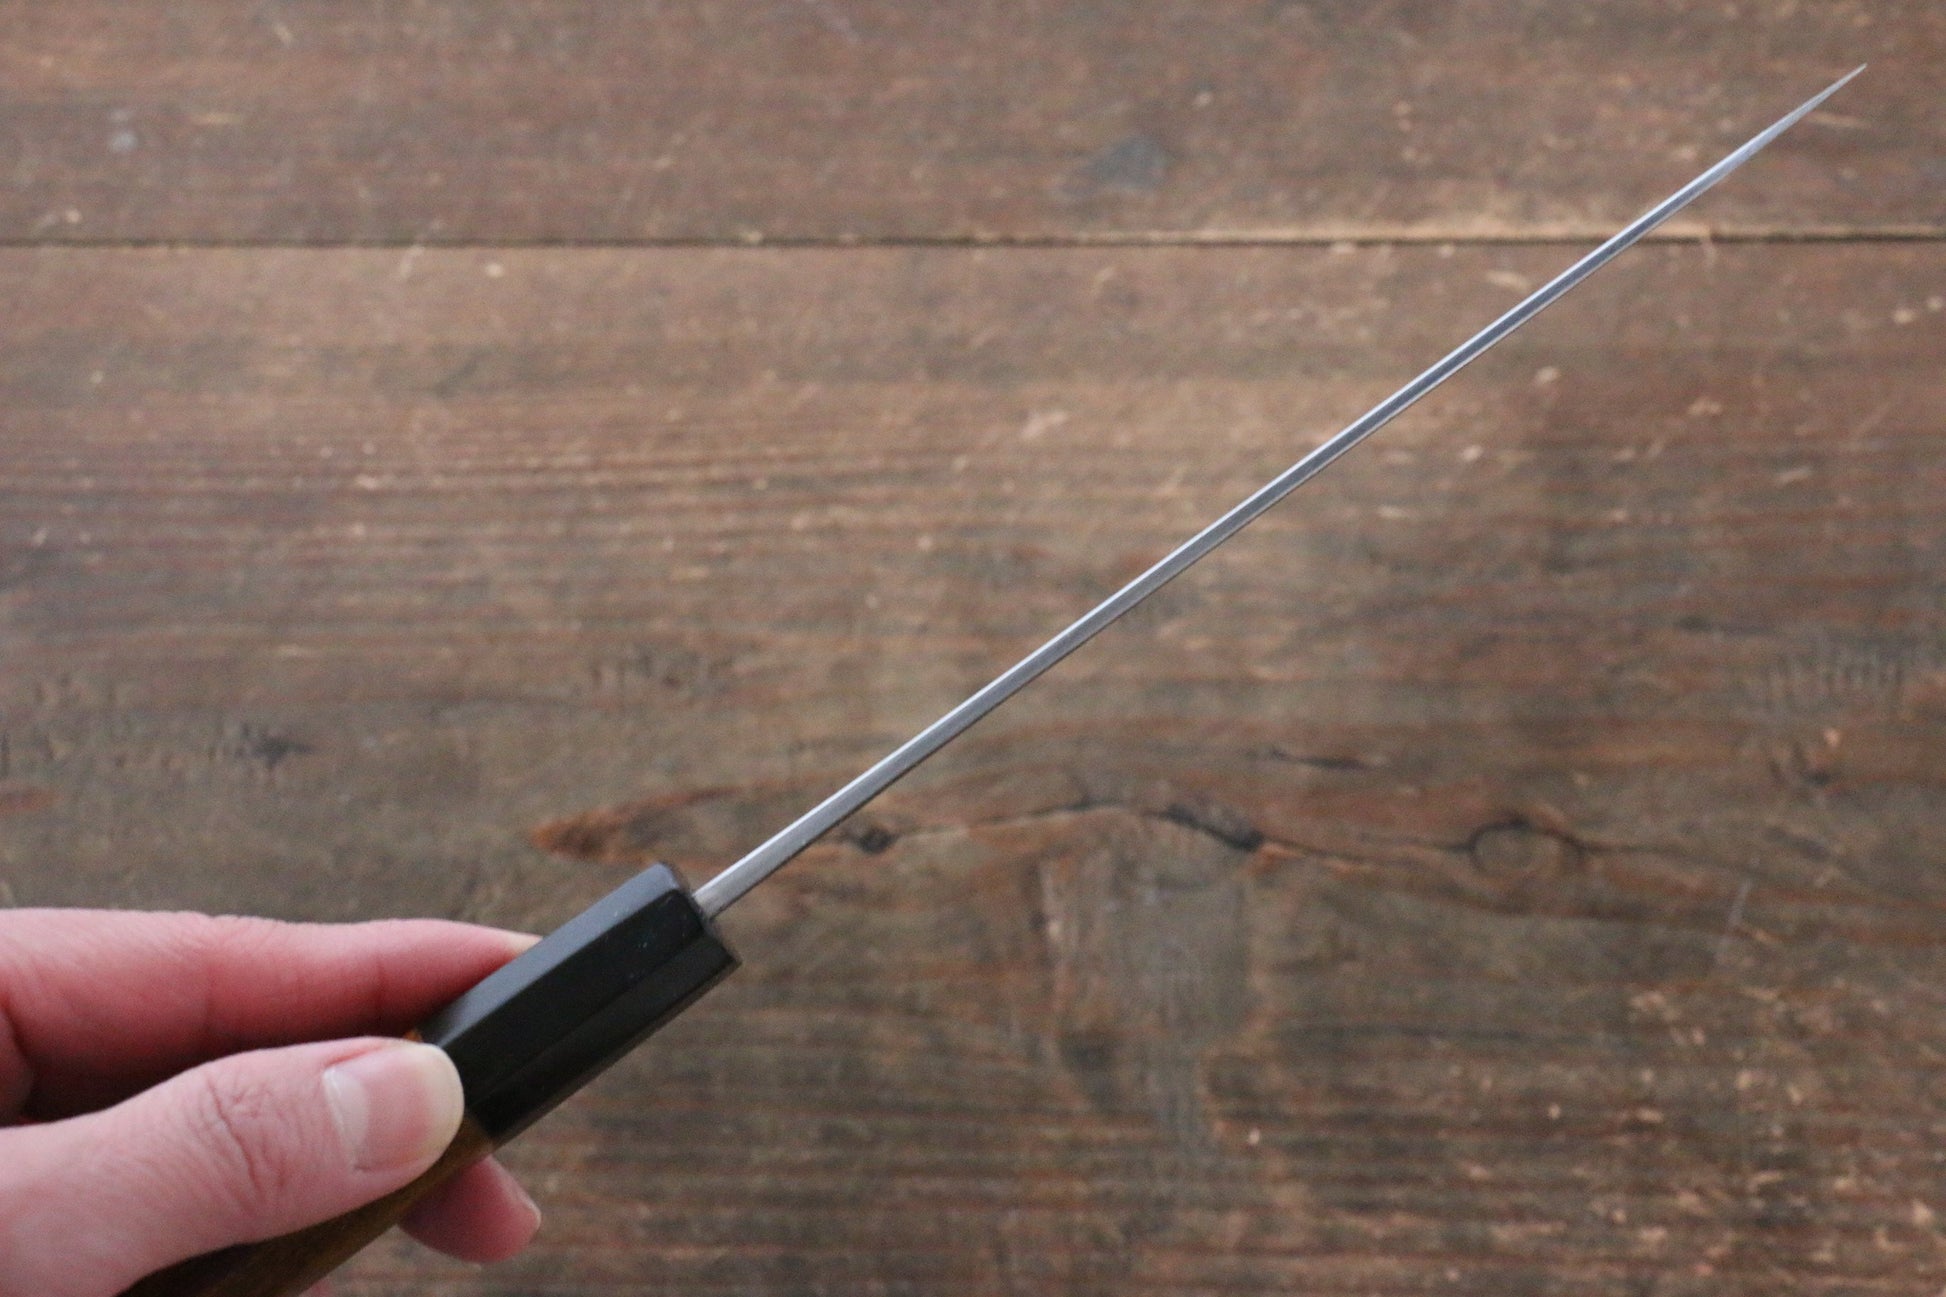 加藤 義実 青スーパー鋼 黒打 ペティーナイフ 150mm 漆塗り柄 鞘付き - 清助刃物